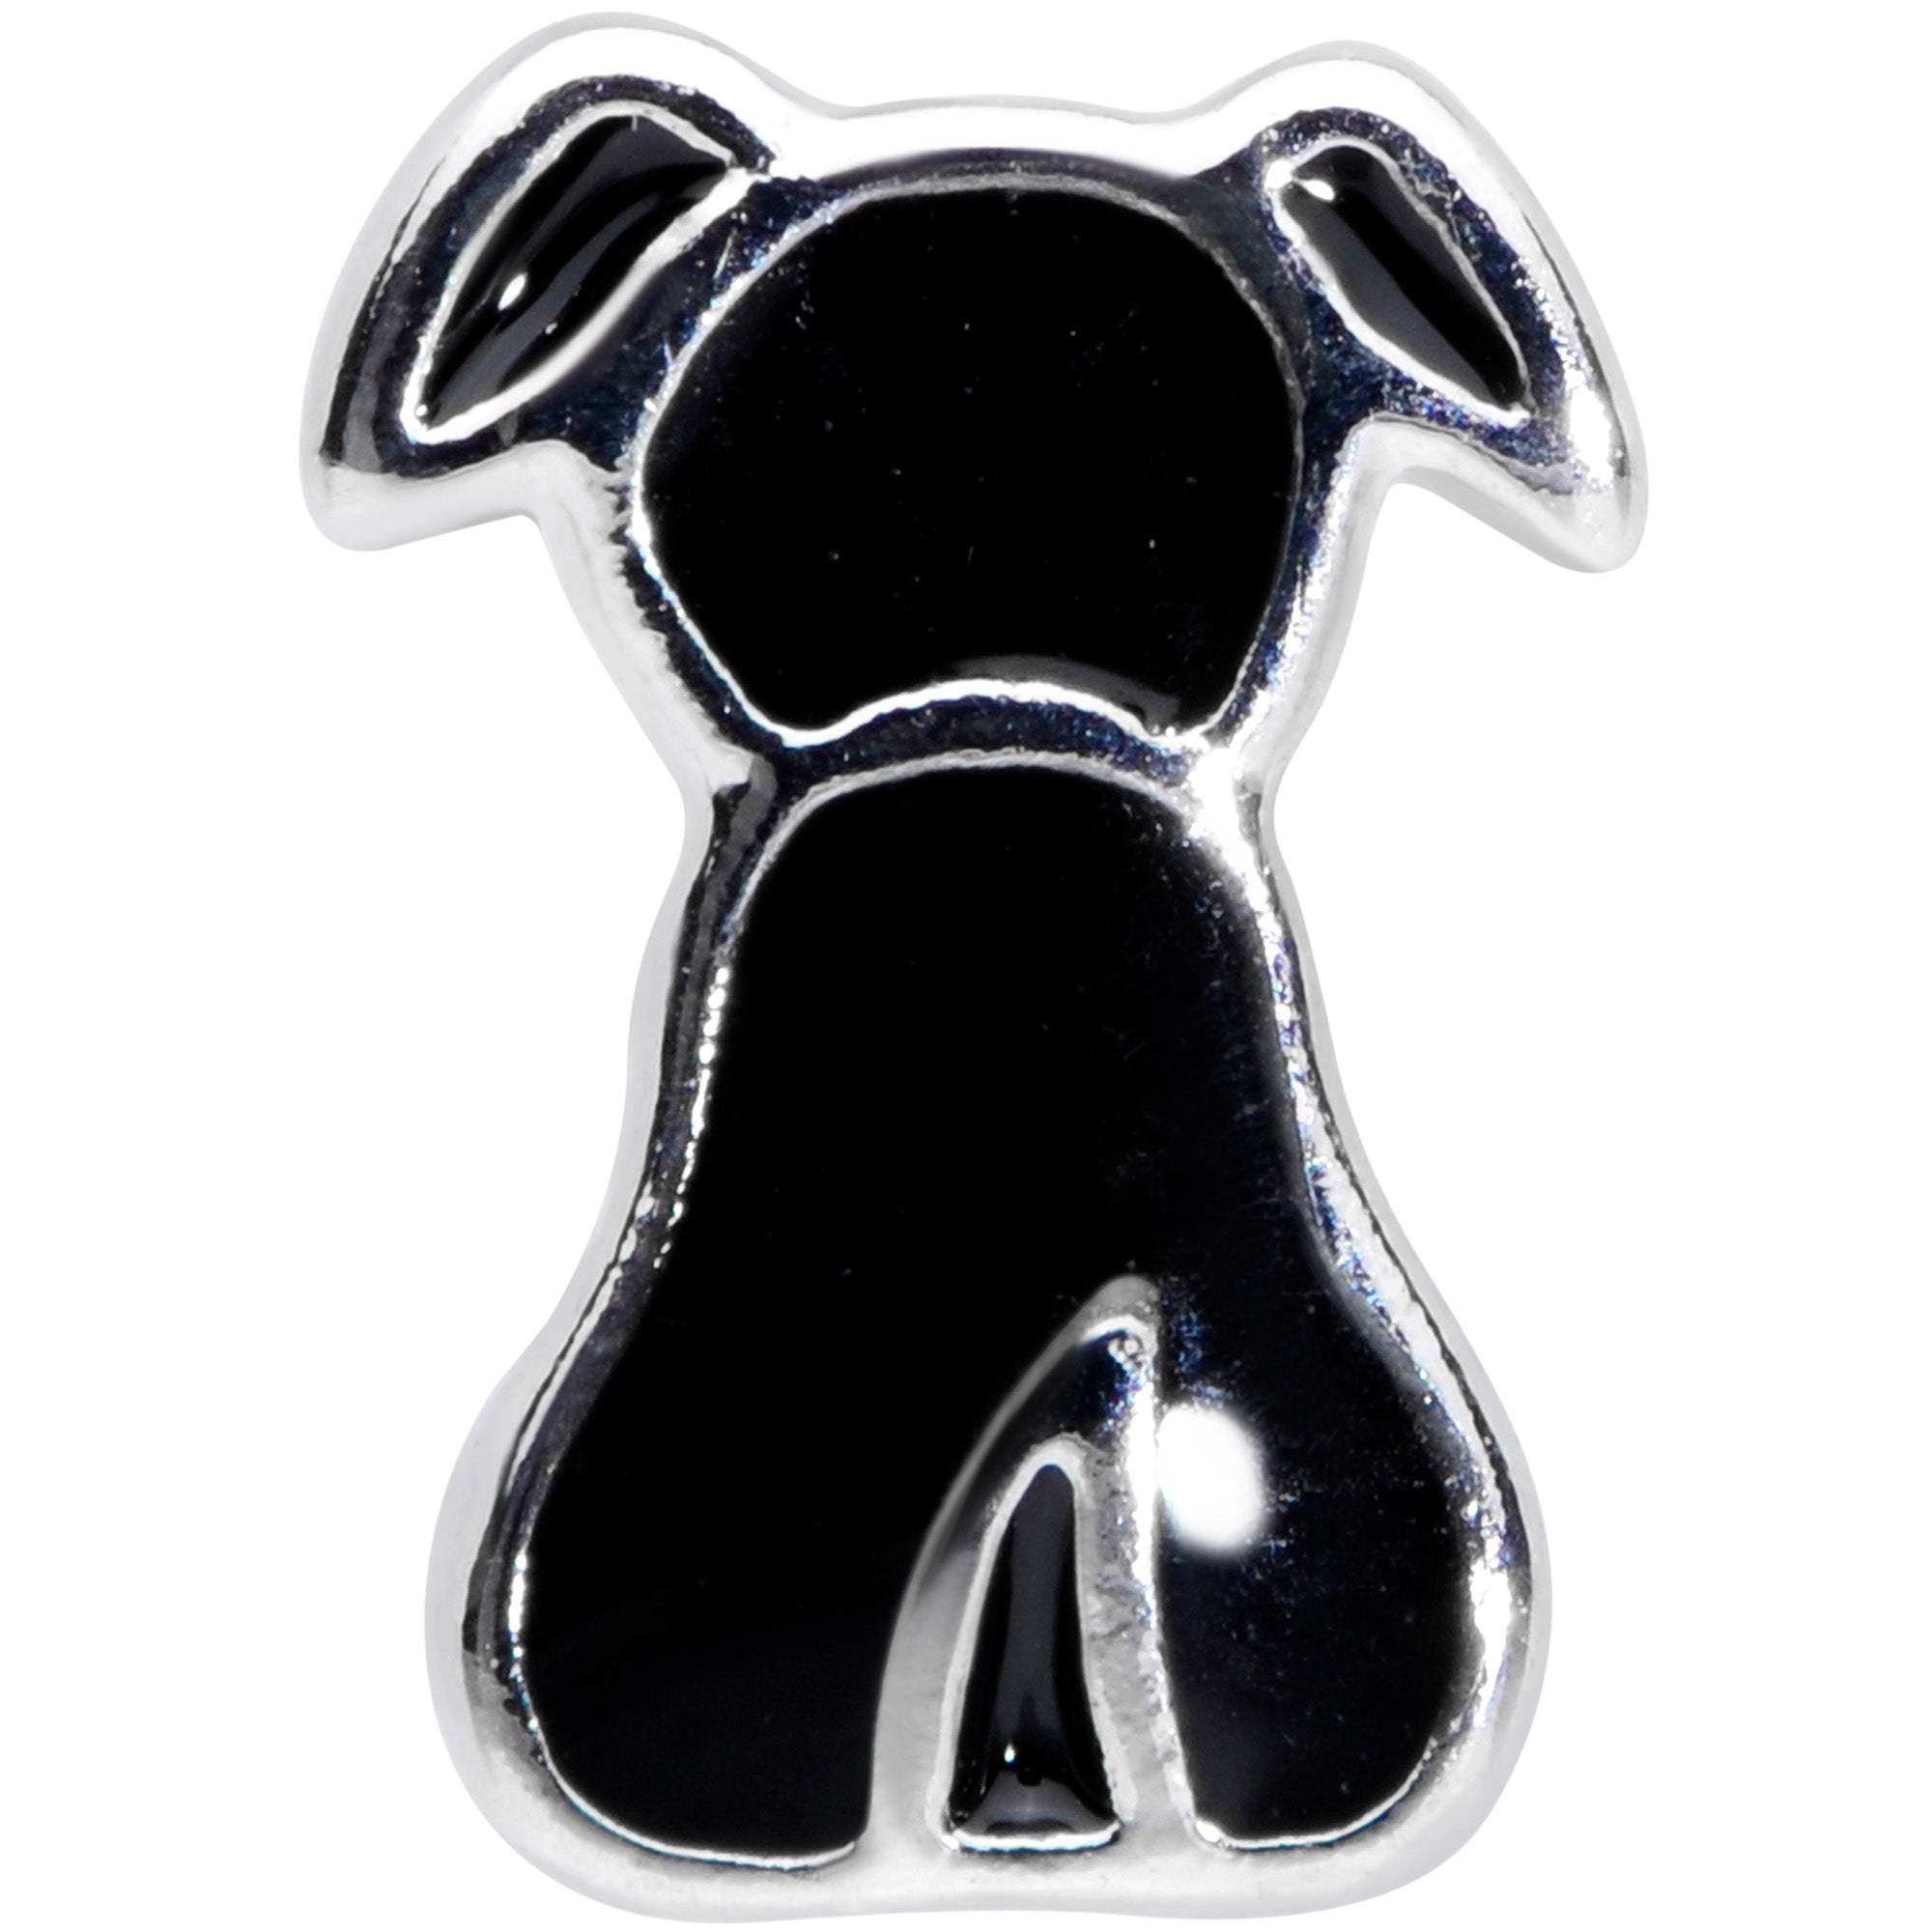 16 Gauge 1/4 Black Sitting Dog Cartilage Tragus Earring